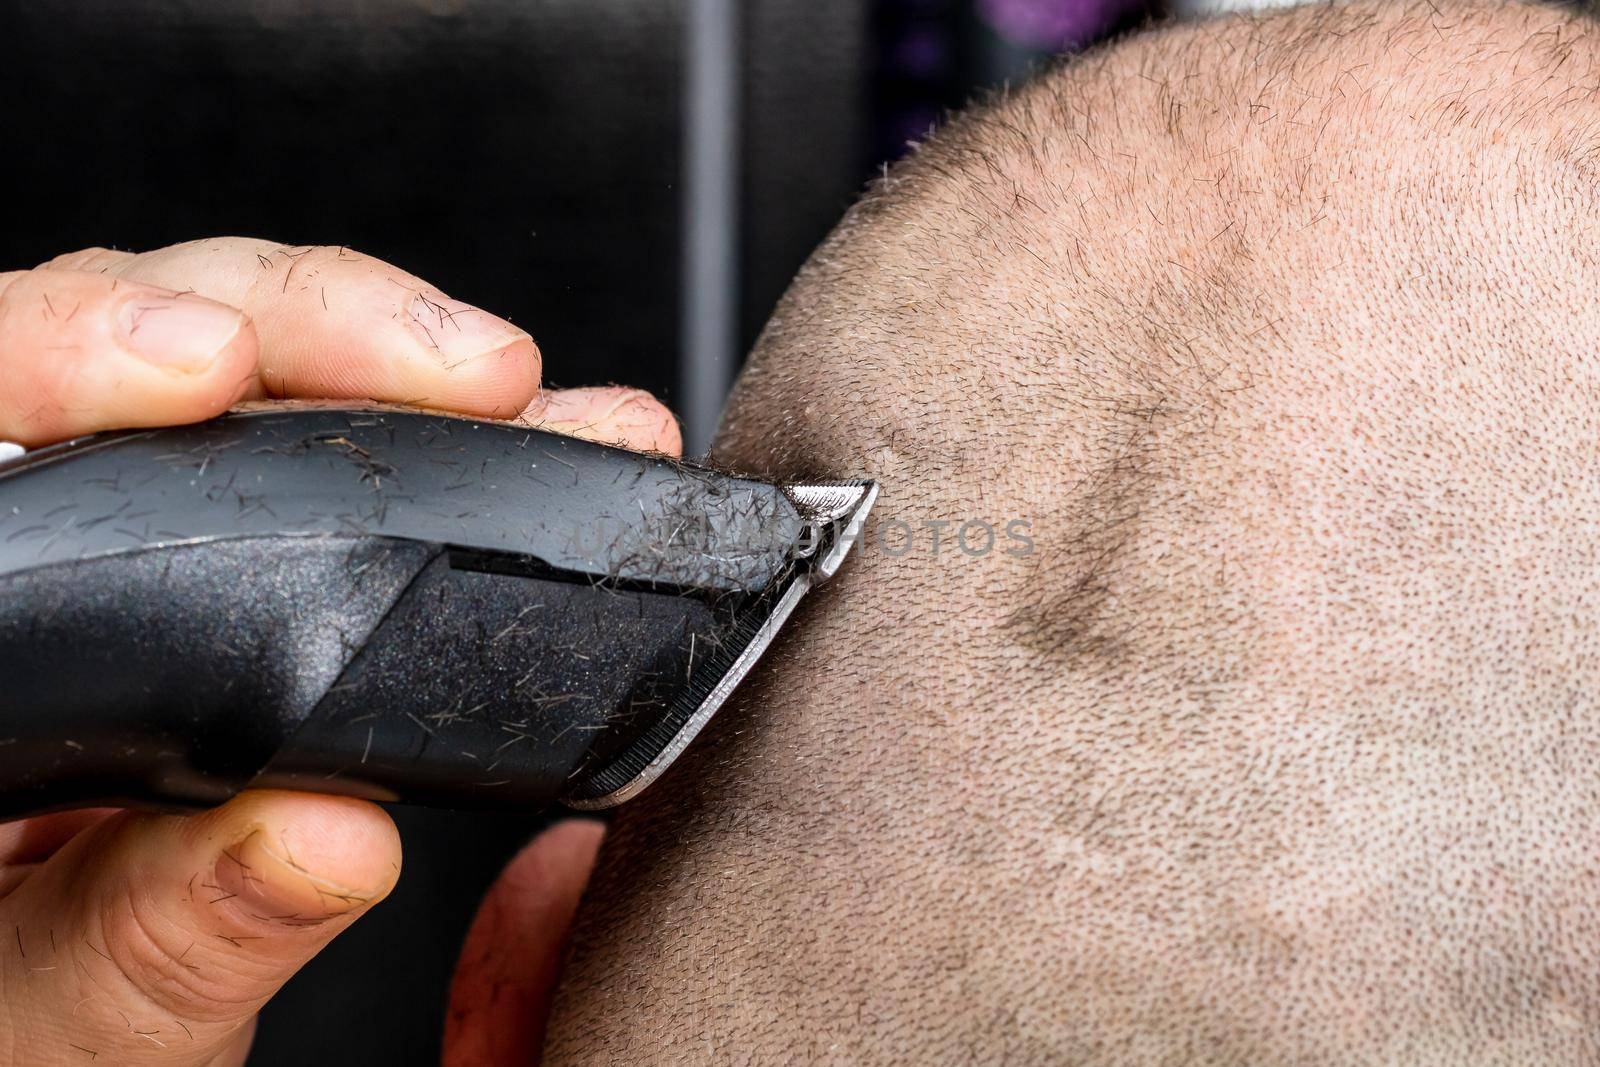 Man shaving or trimming his hair using a hair clipper